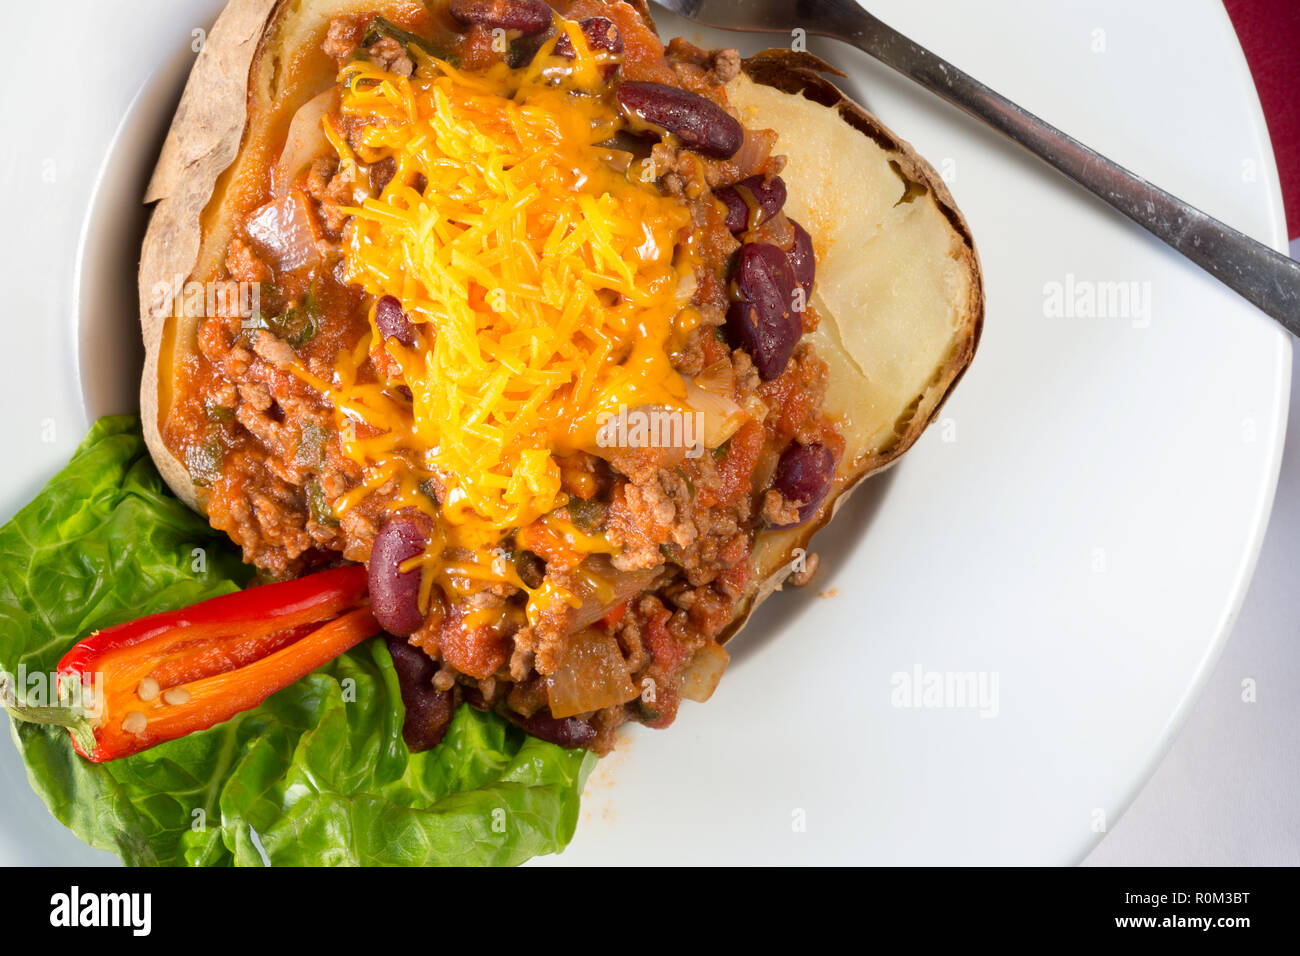 Ofen gebacken Jacke Kartoffel mit Hackfleisch, Paprika Füllung gekrönt mit  geriebenem Käse Stockfotografie - Alamy